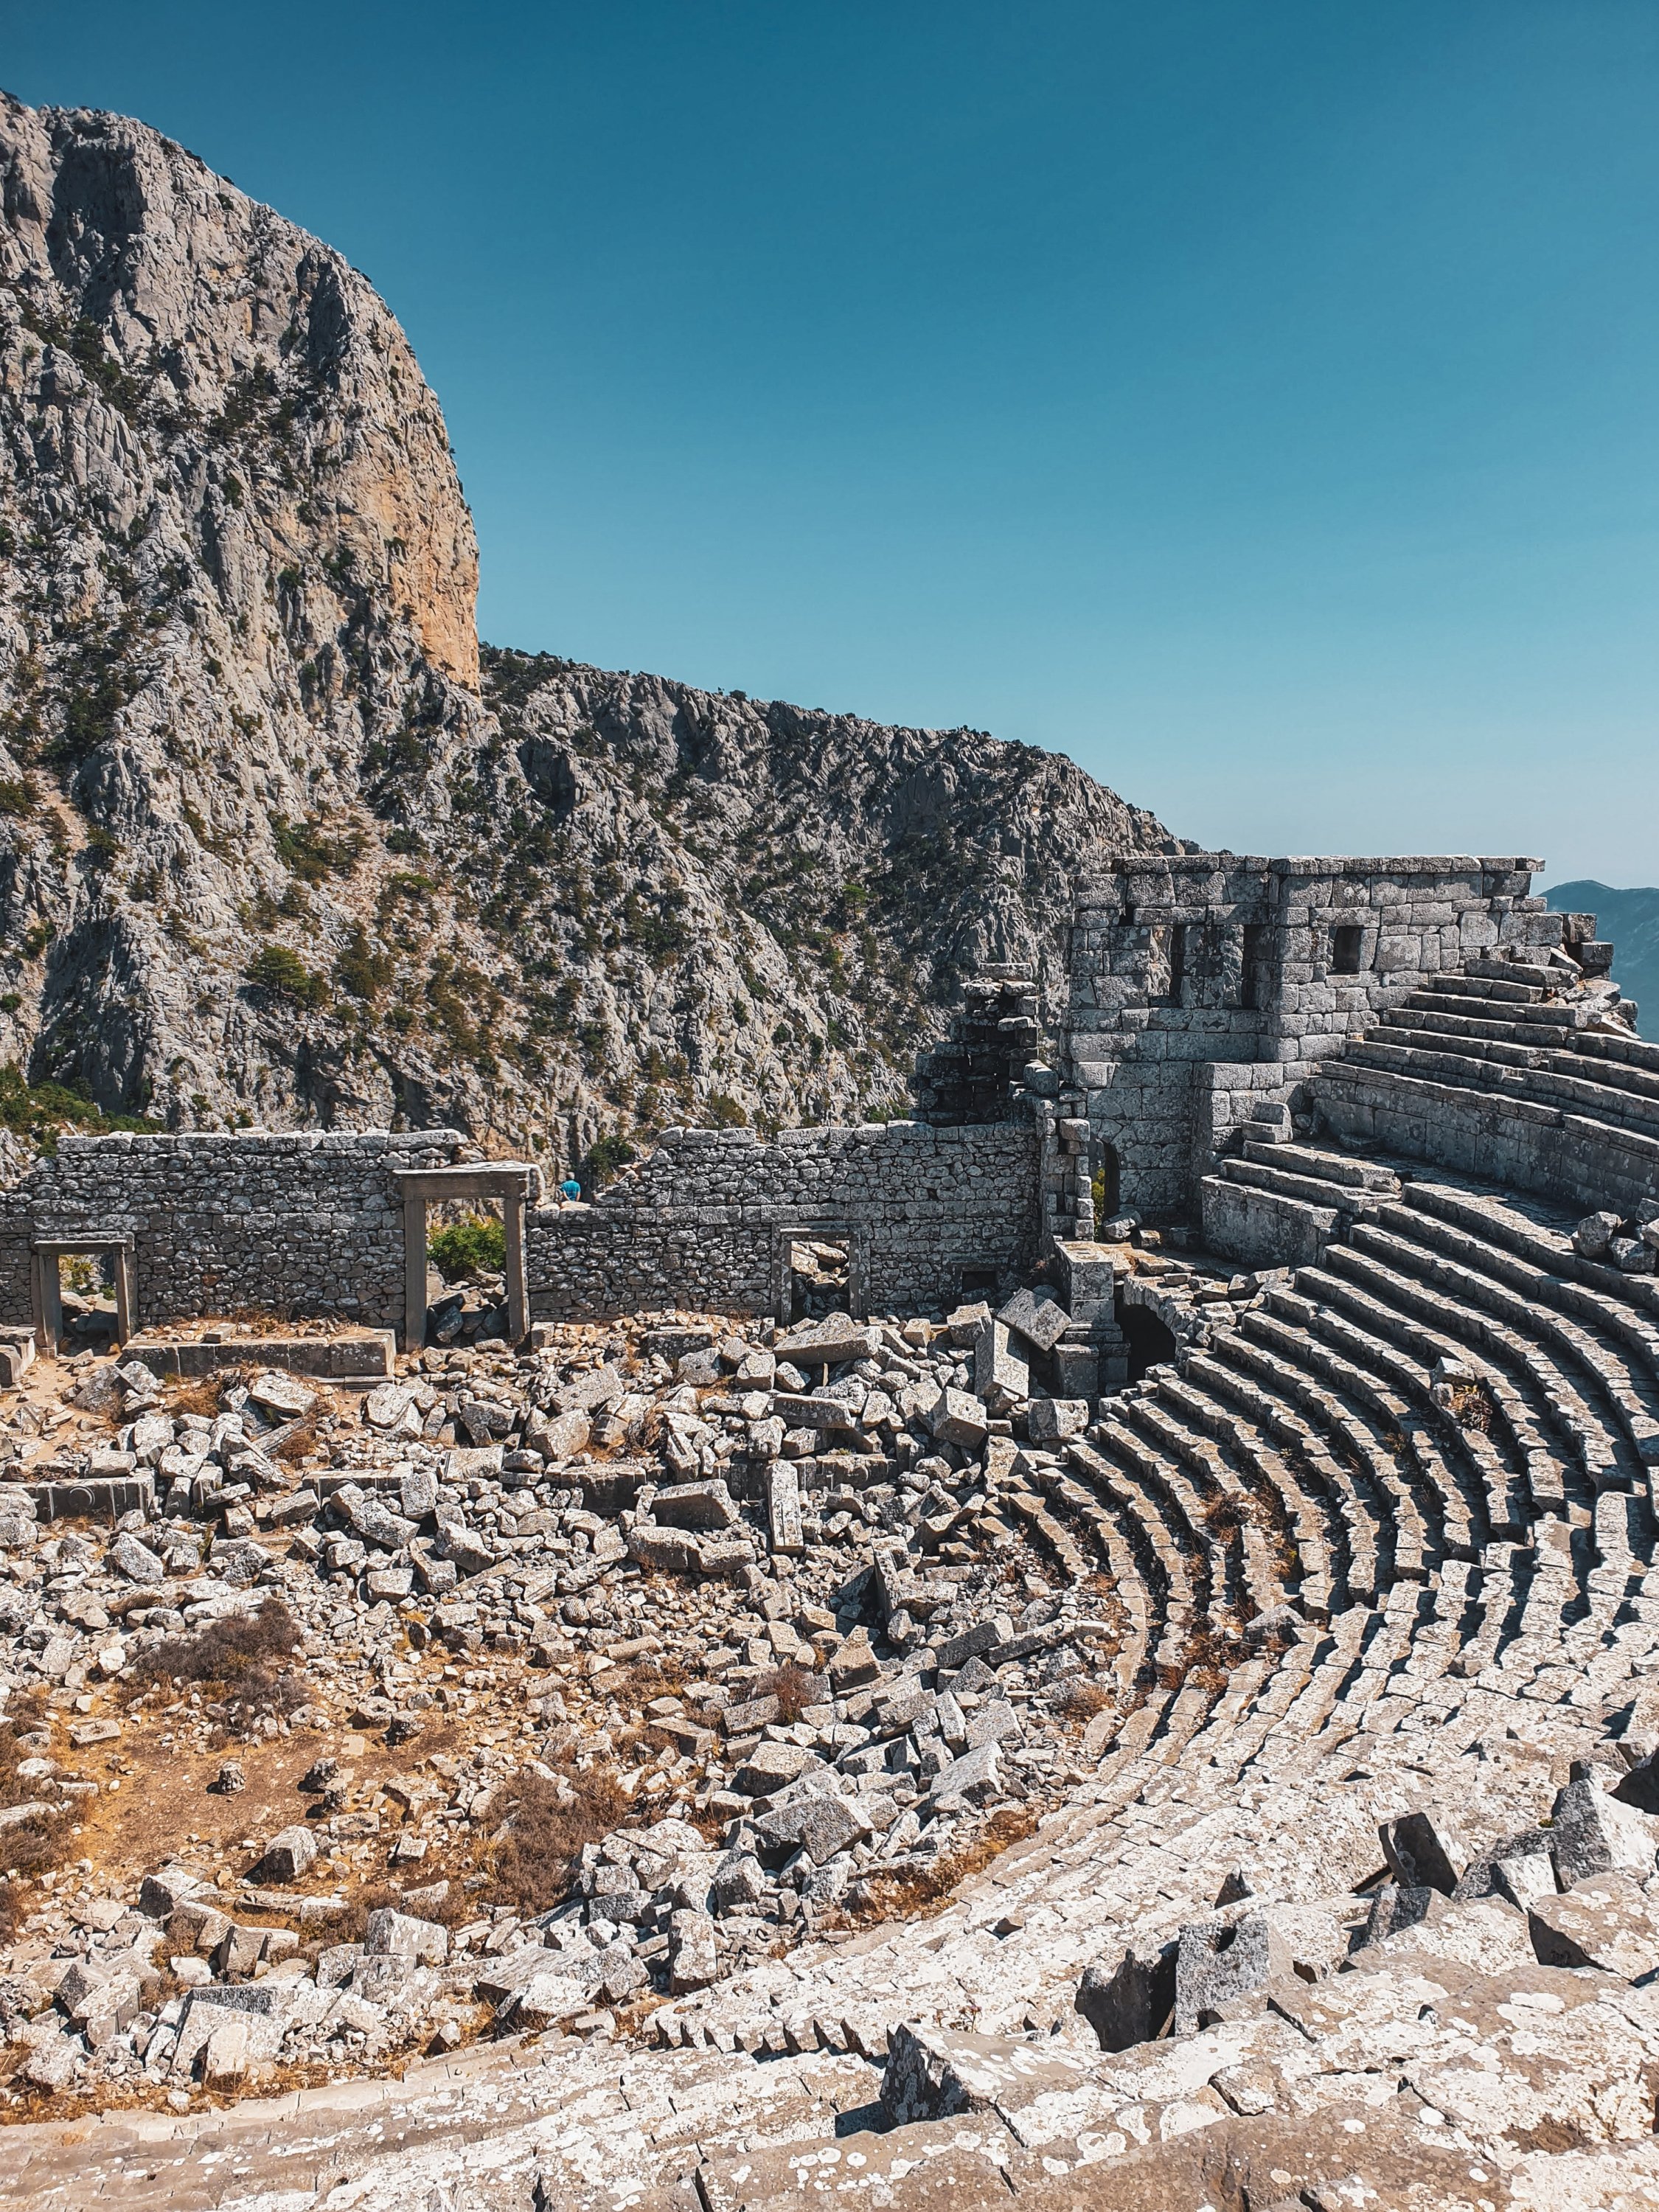   Pouvant accueillir jusqu'à 4500 personnes, le théâtre antique est l'attraction la plus notable de Termessos.  (Photo par Argun Konuk)